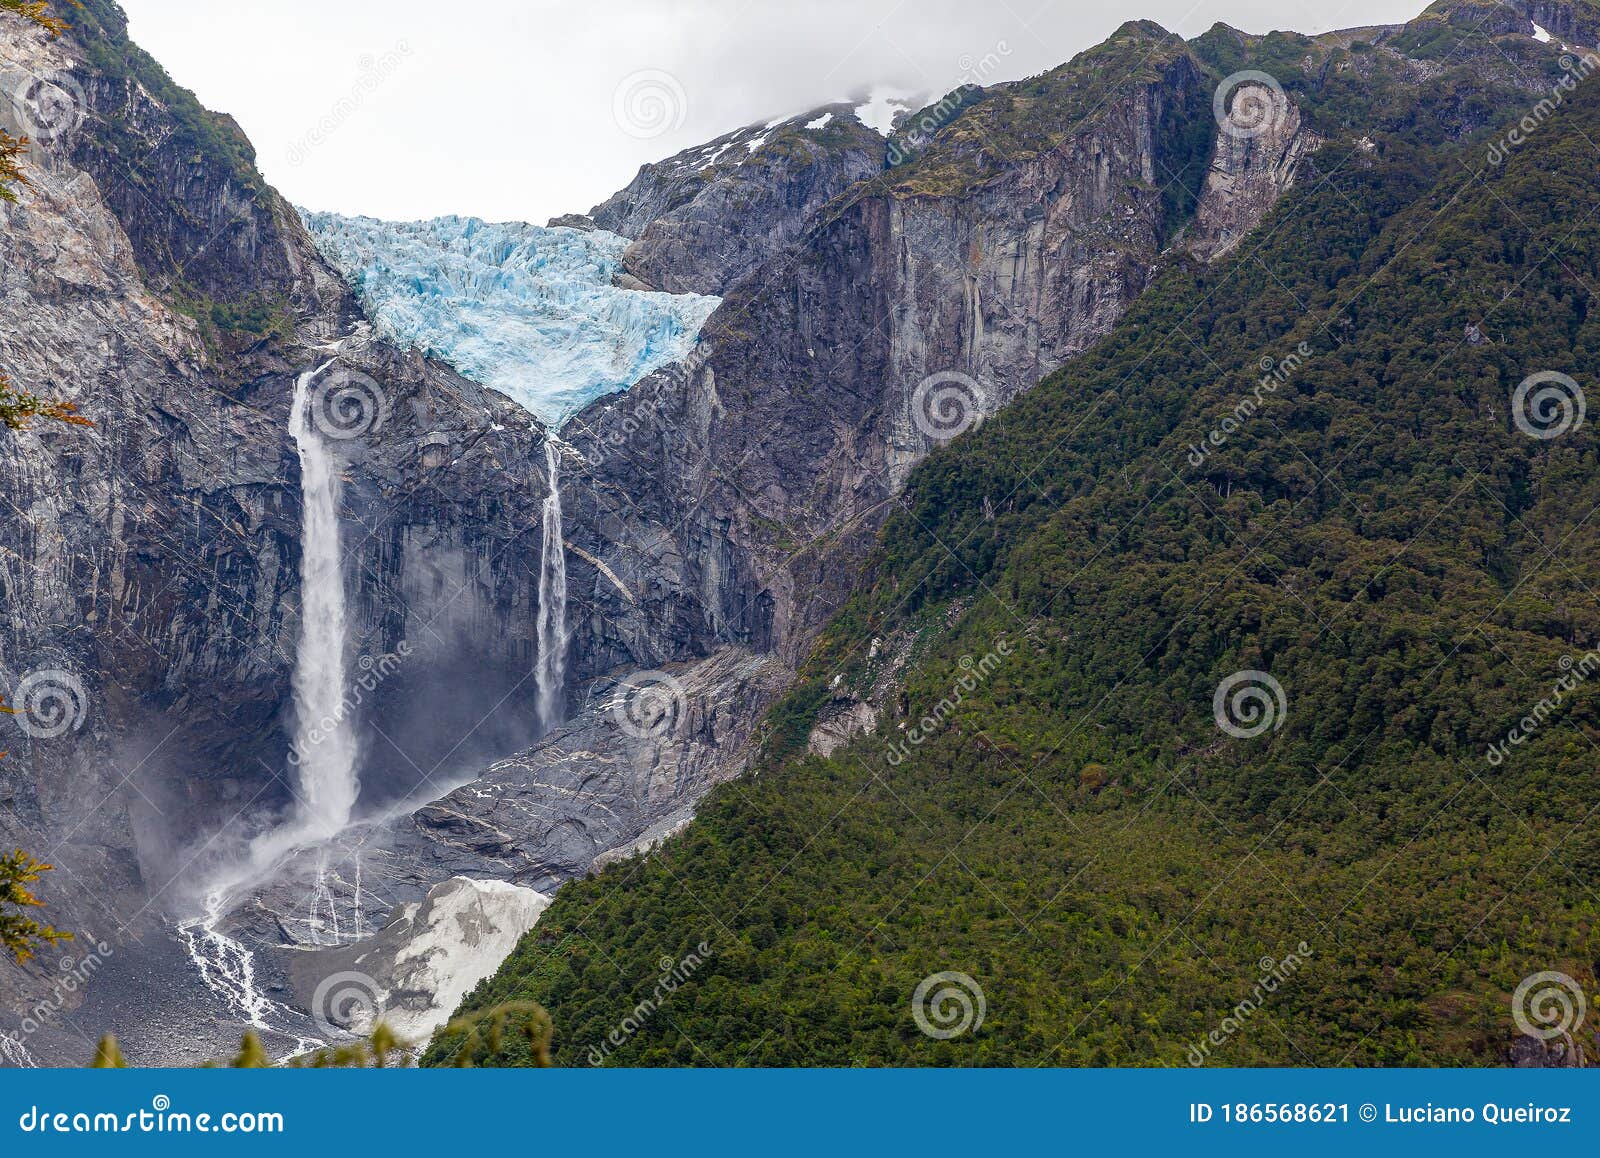 the glacier of ventisquero colgante, near the village of puyuhuapi, chile